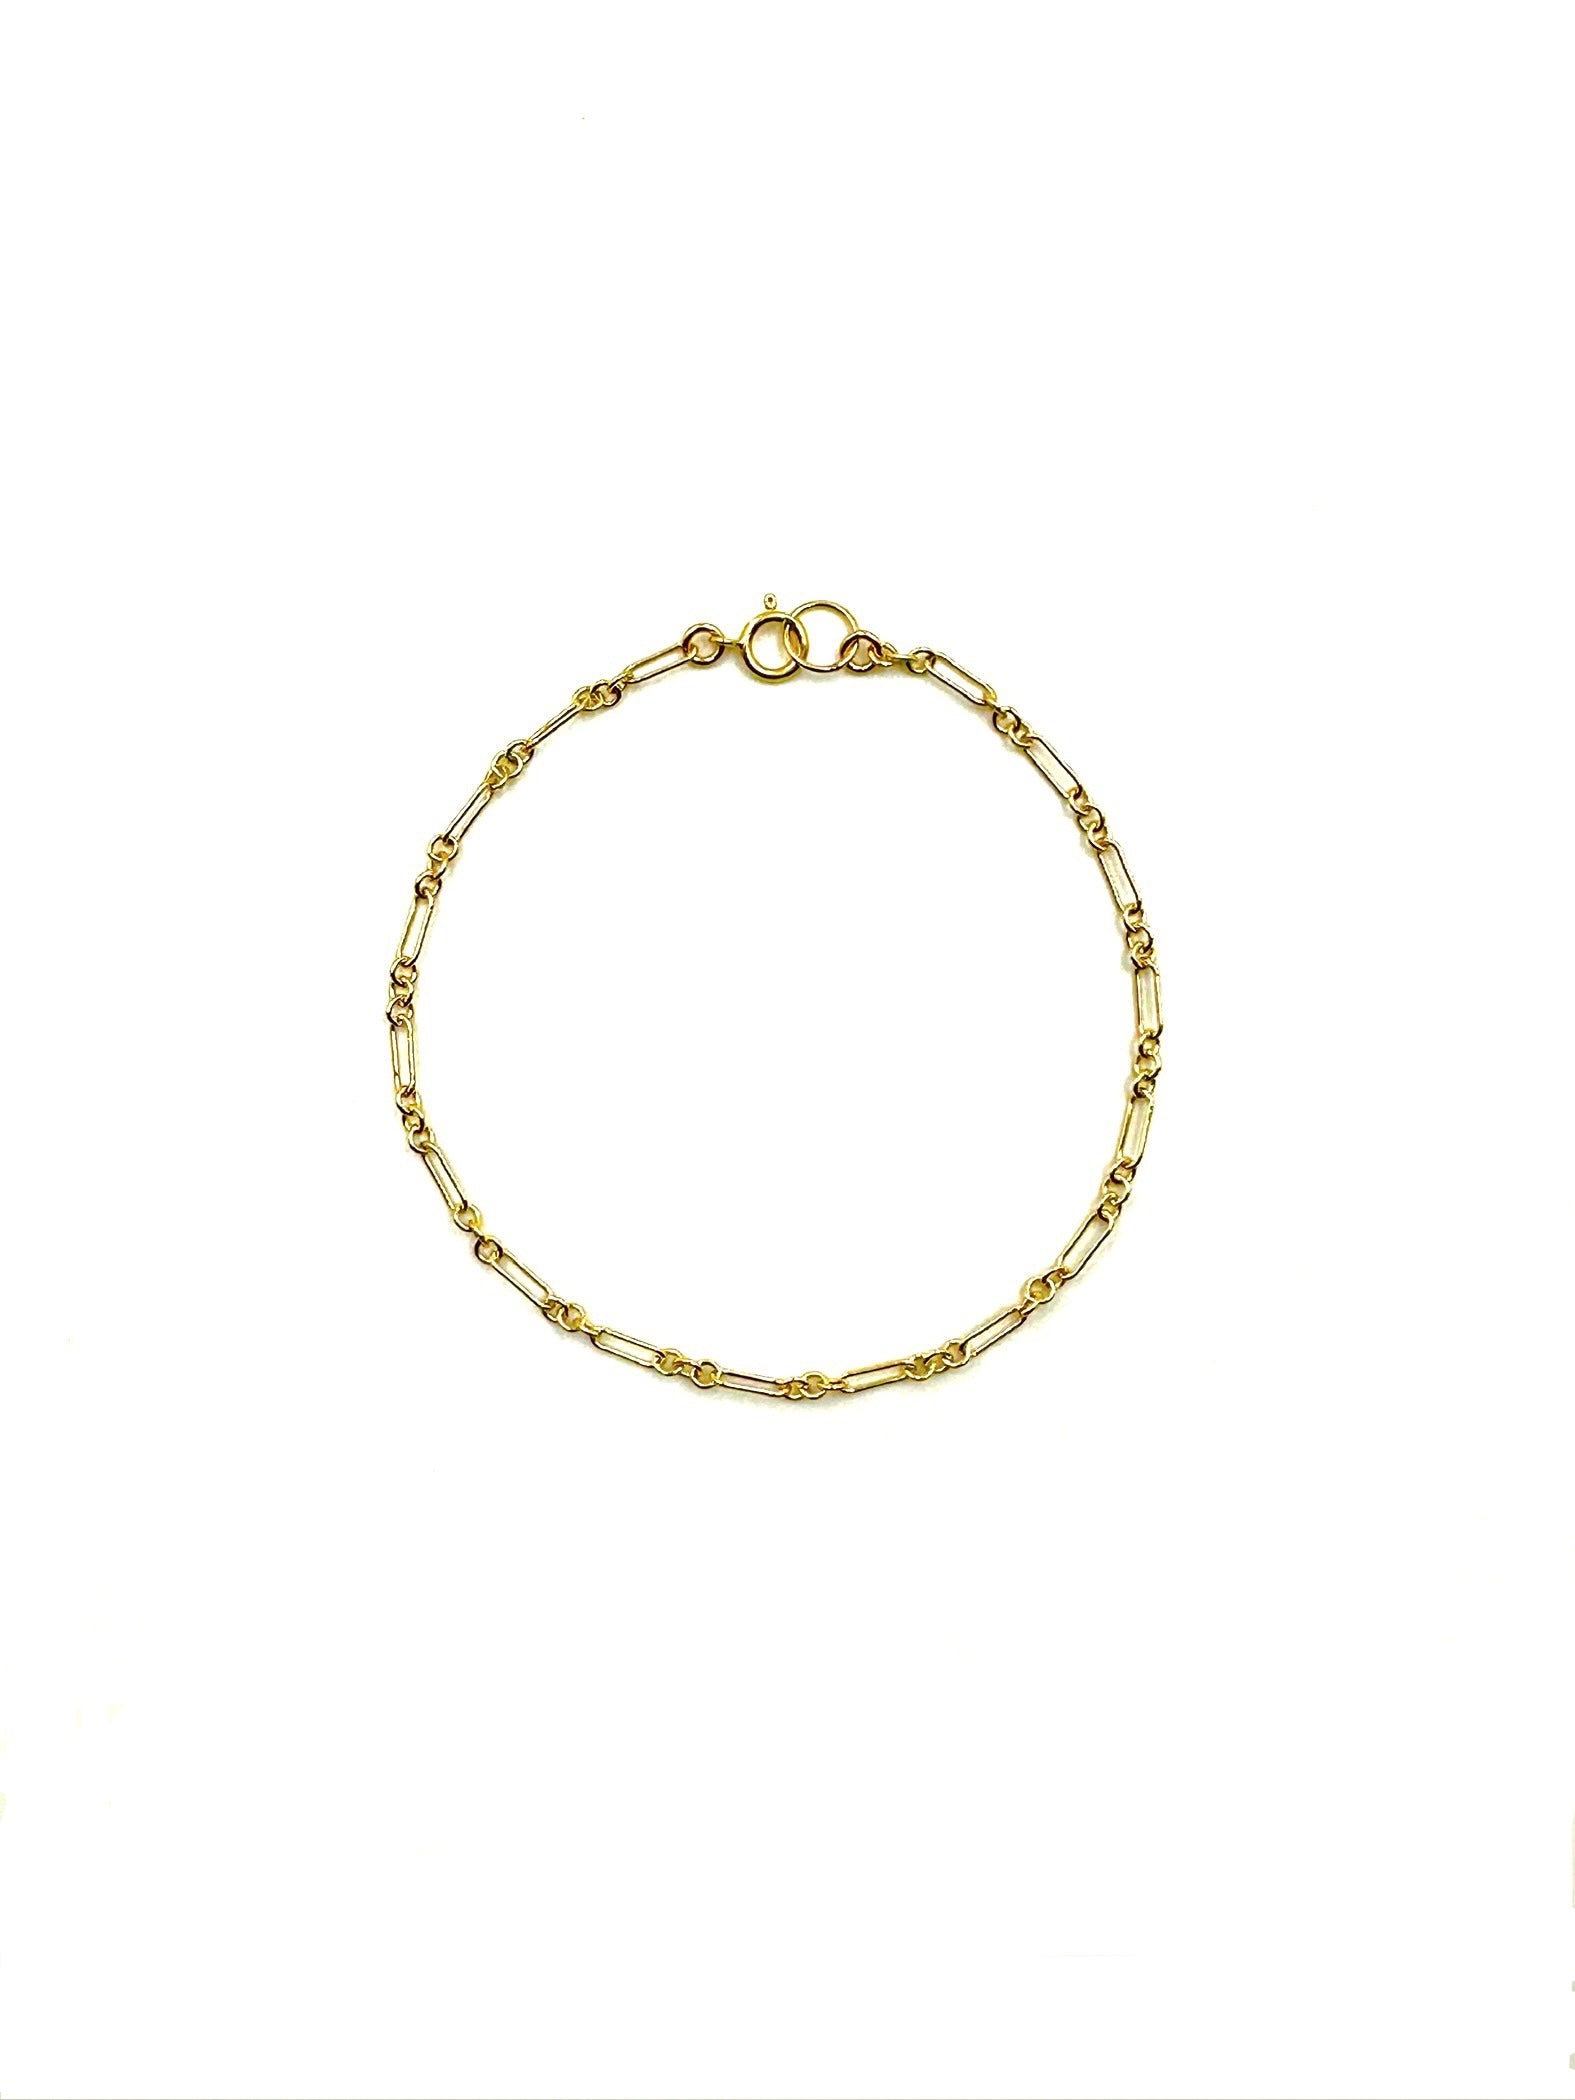 Naples B - Delicate gold filled link bracelet